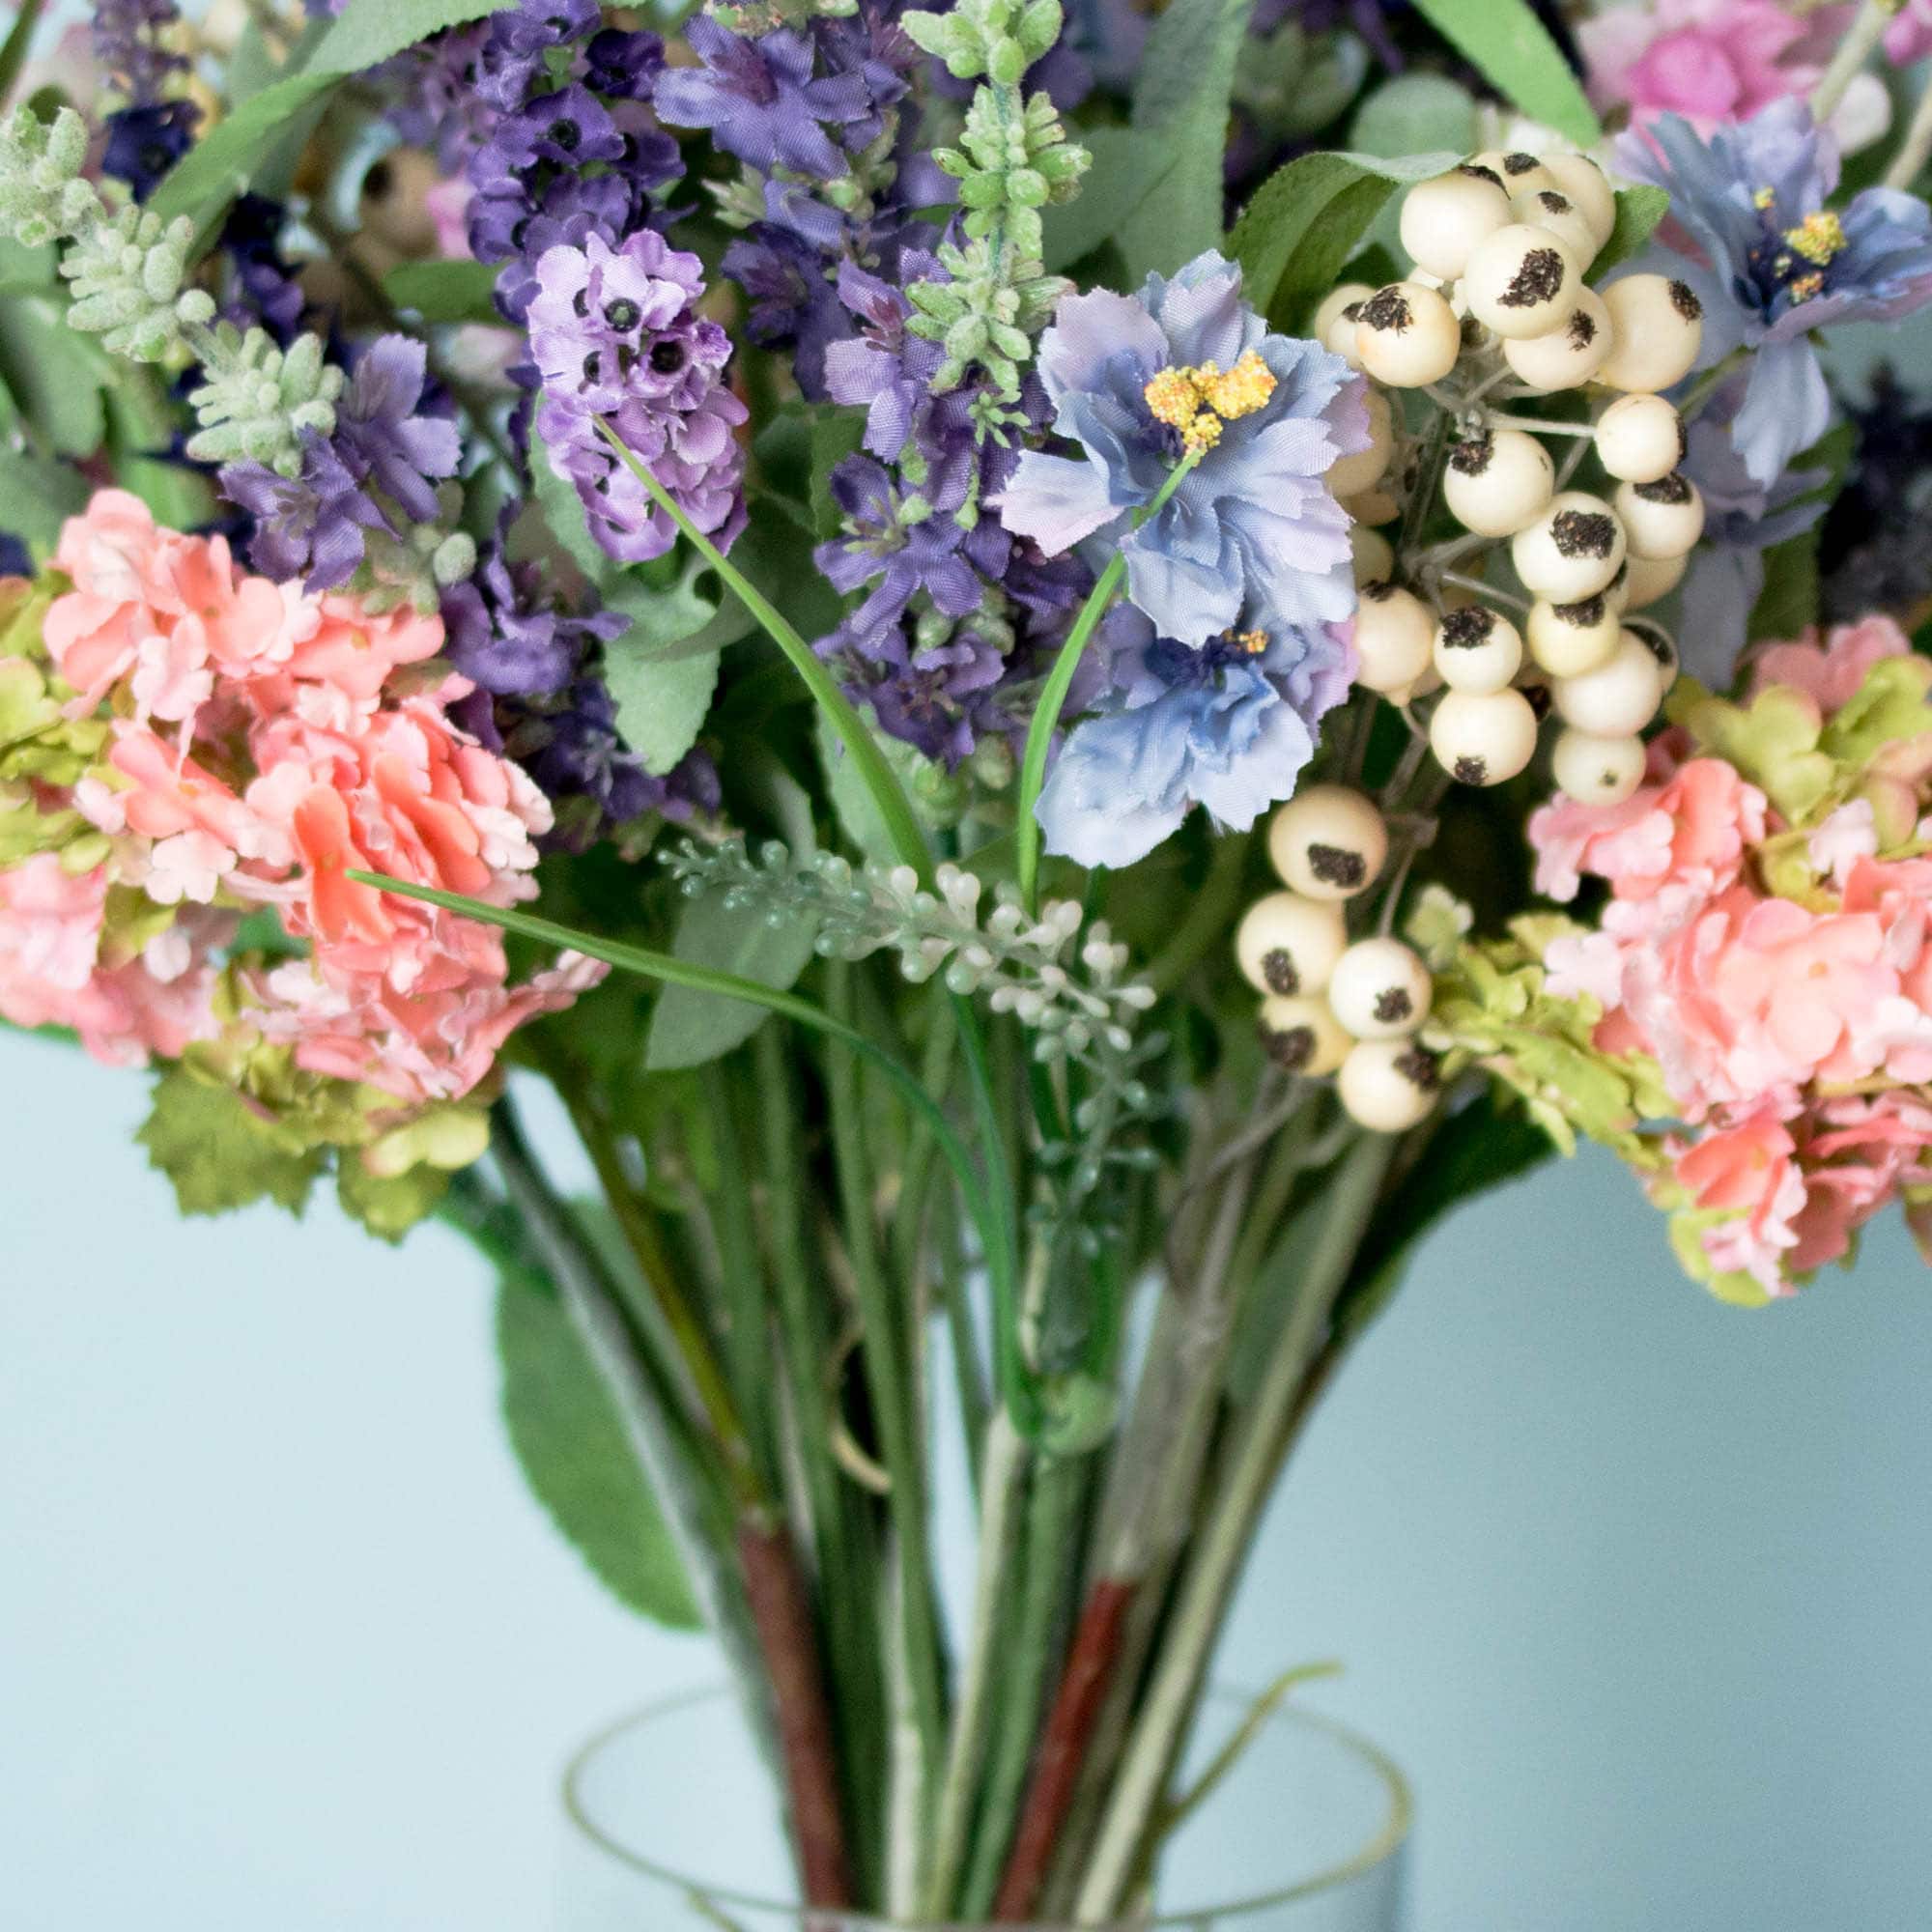 16&#x22; Lavender &#x26; Hydrangea Arrangement in Vase